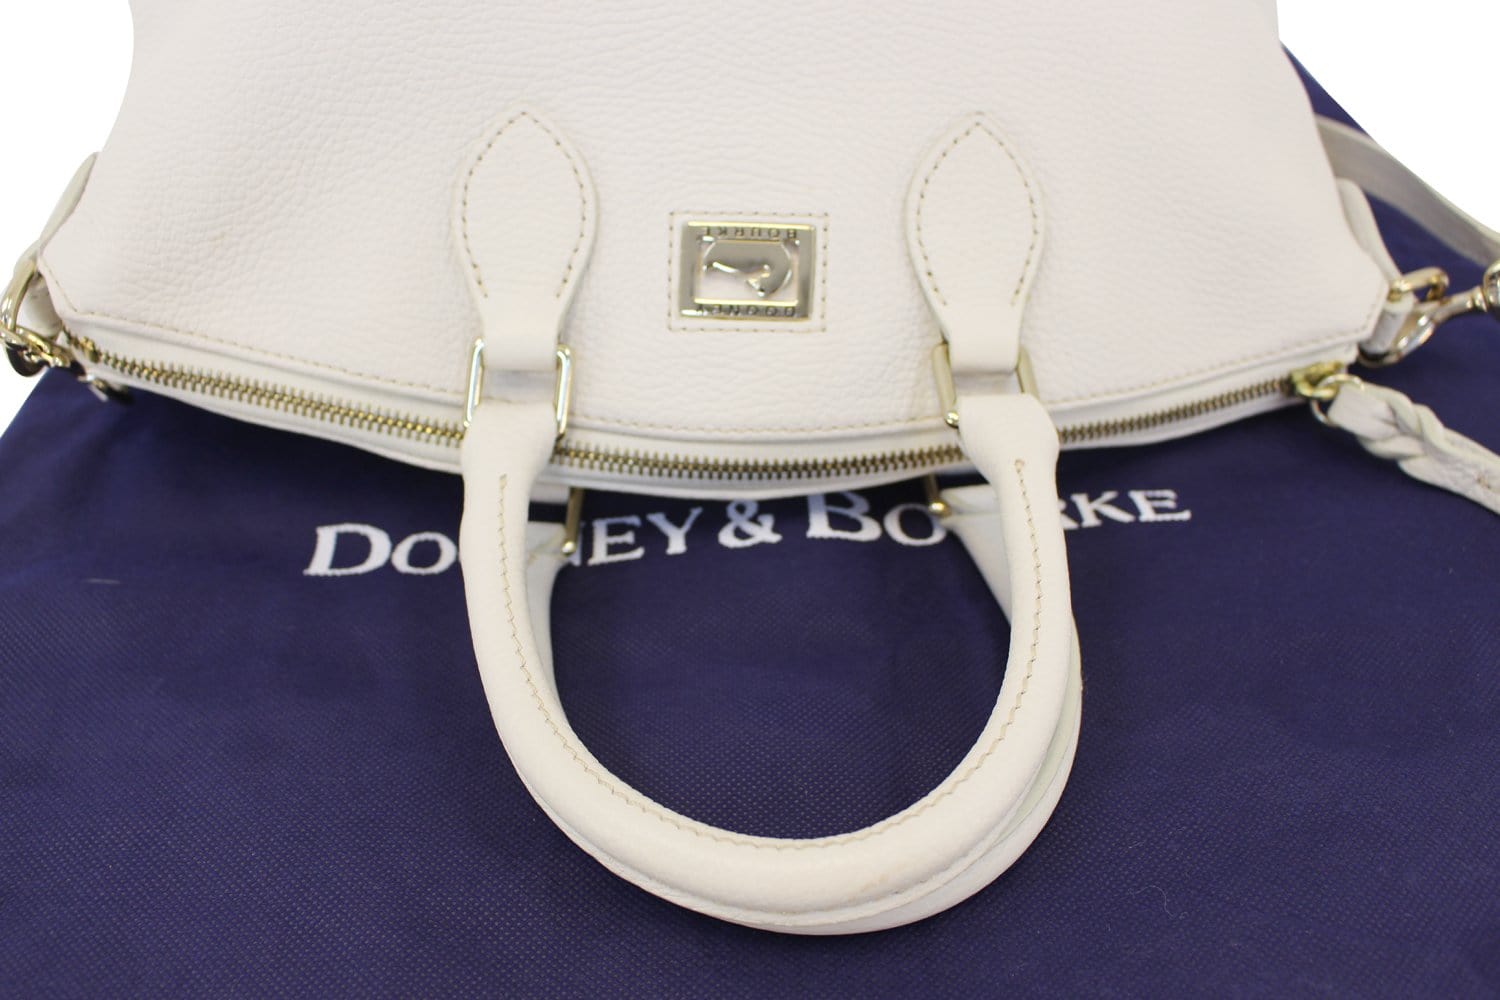 Dooney & Bourke Women's Bag - White